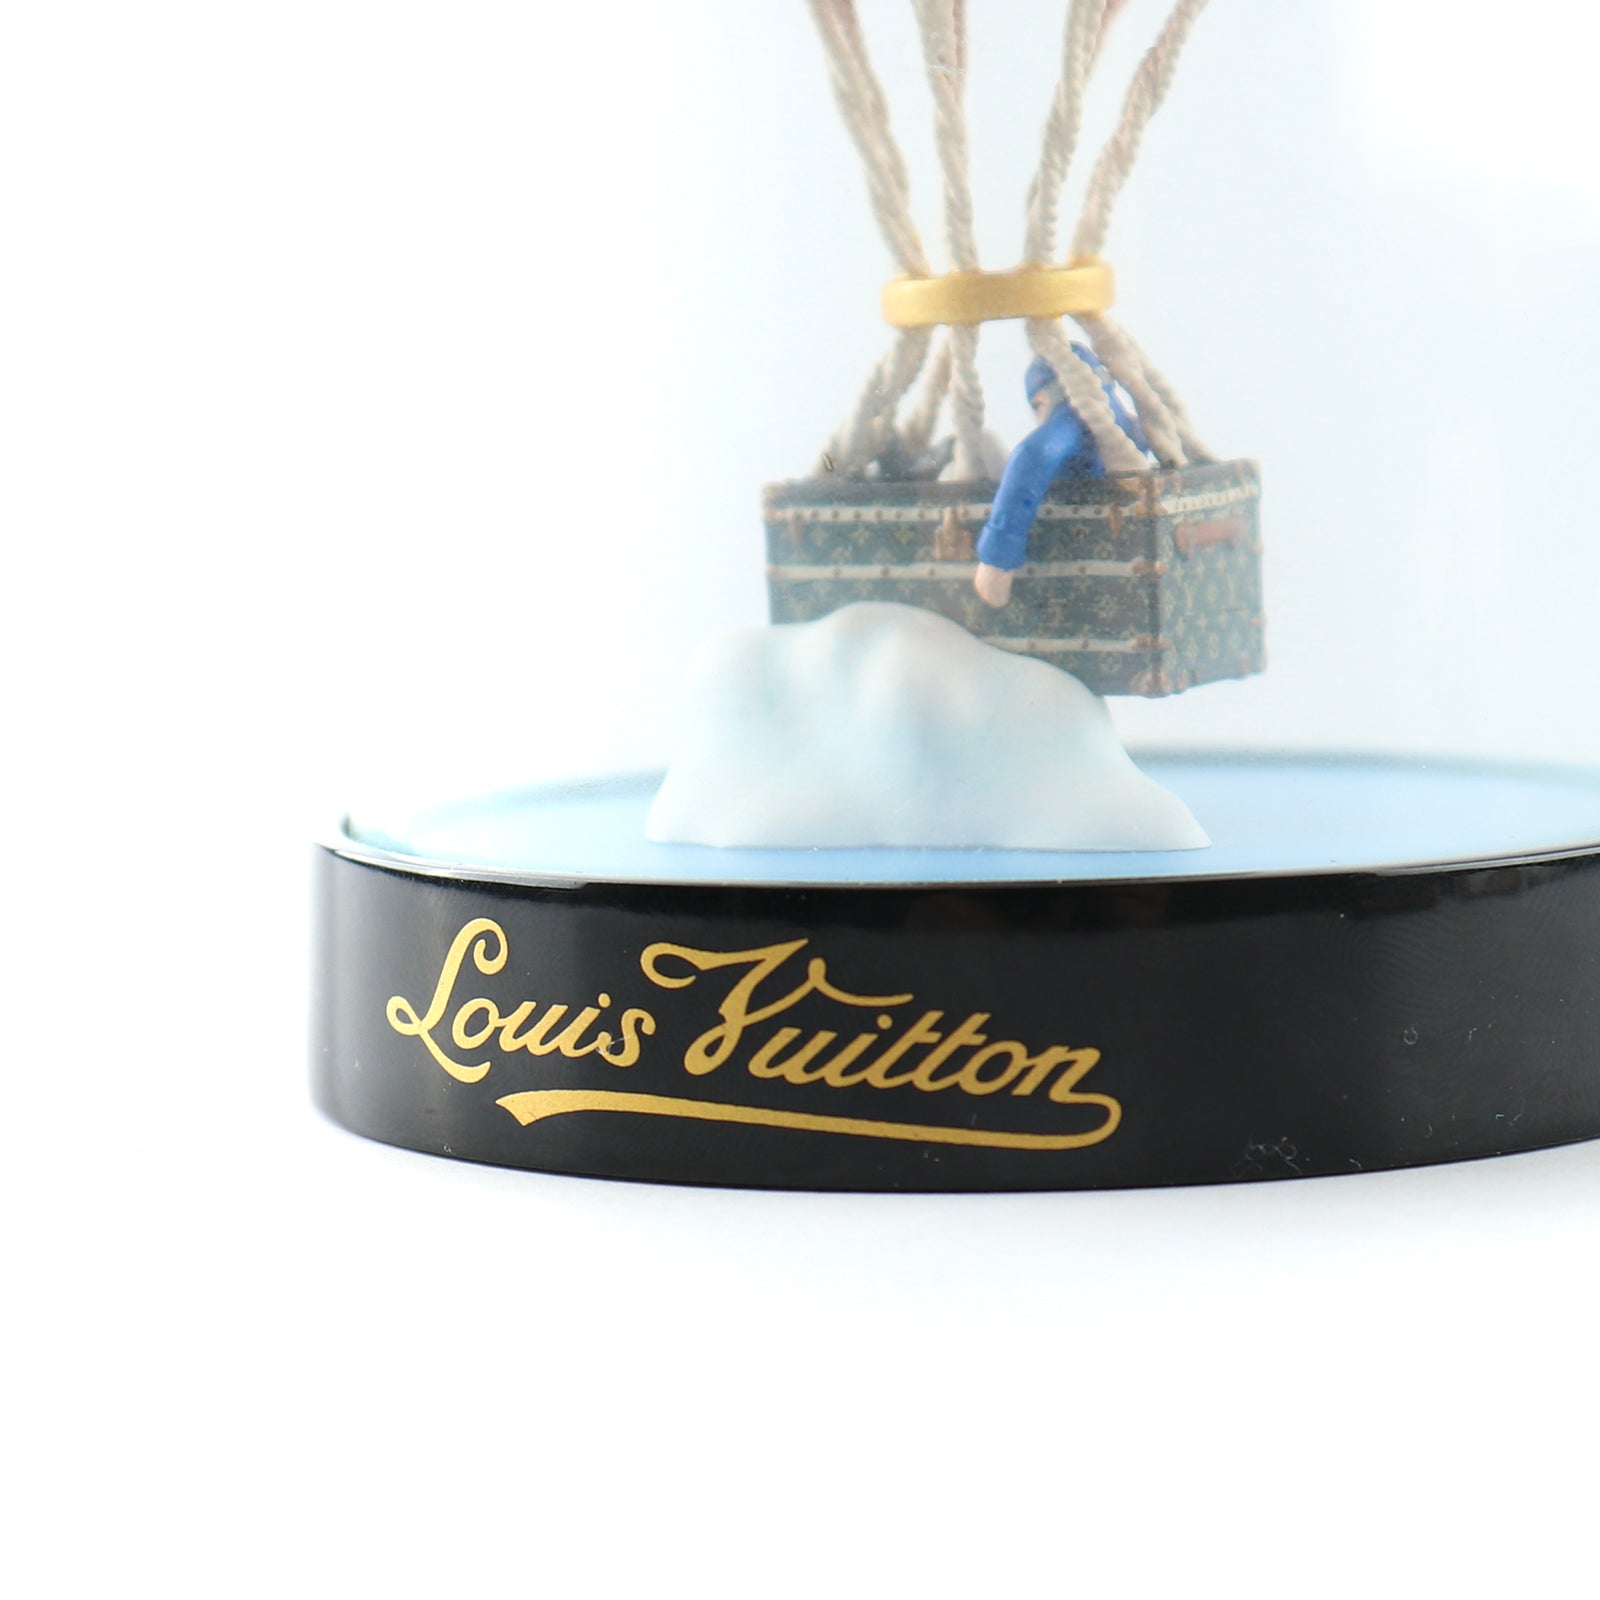 LOUIS VUITTON - Cloche en verre décorative Montgolfière